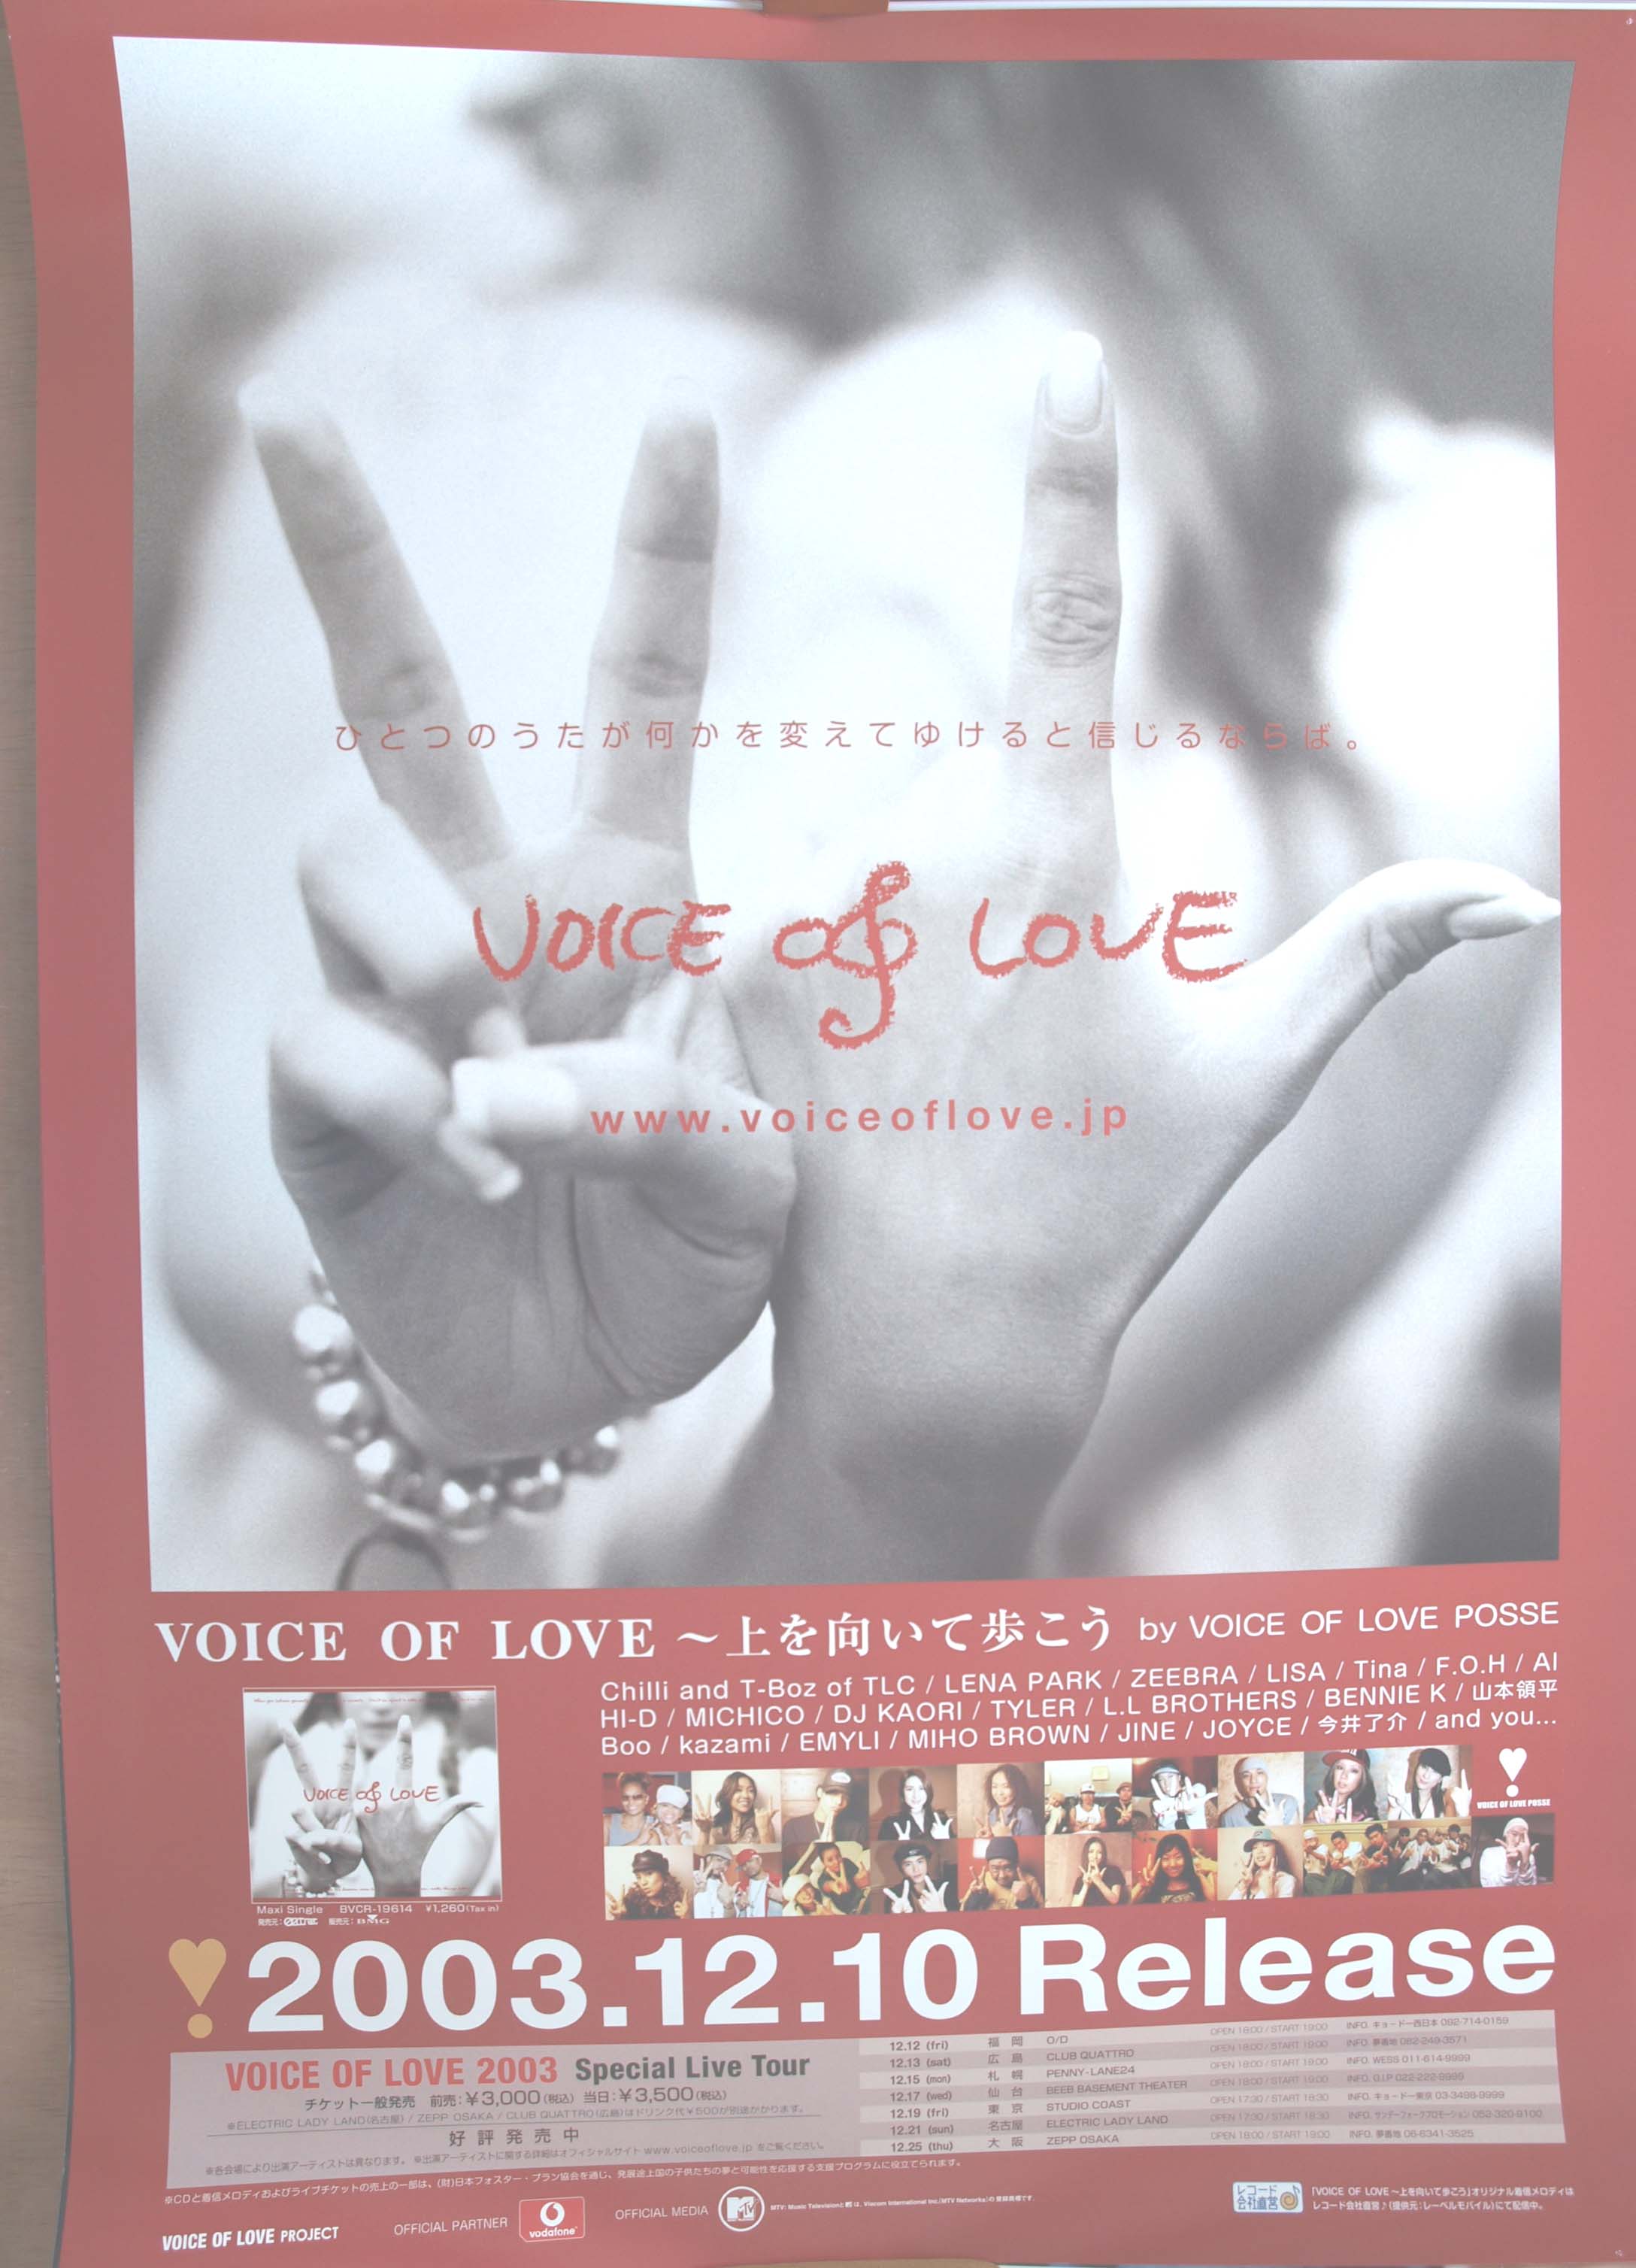 VOICE OF LOVE〜上を向いて歩こうのポスター